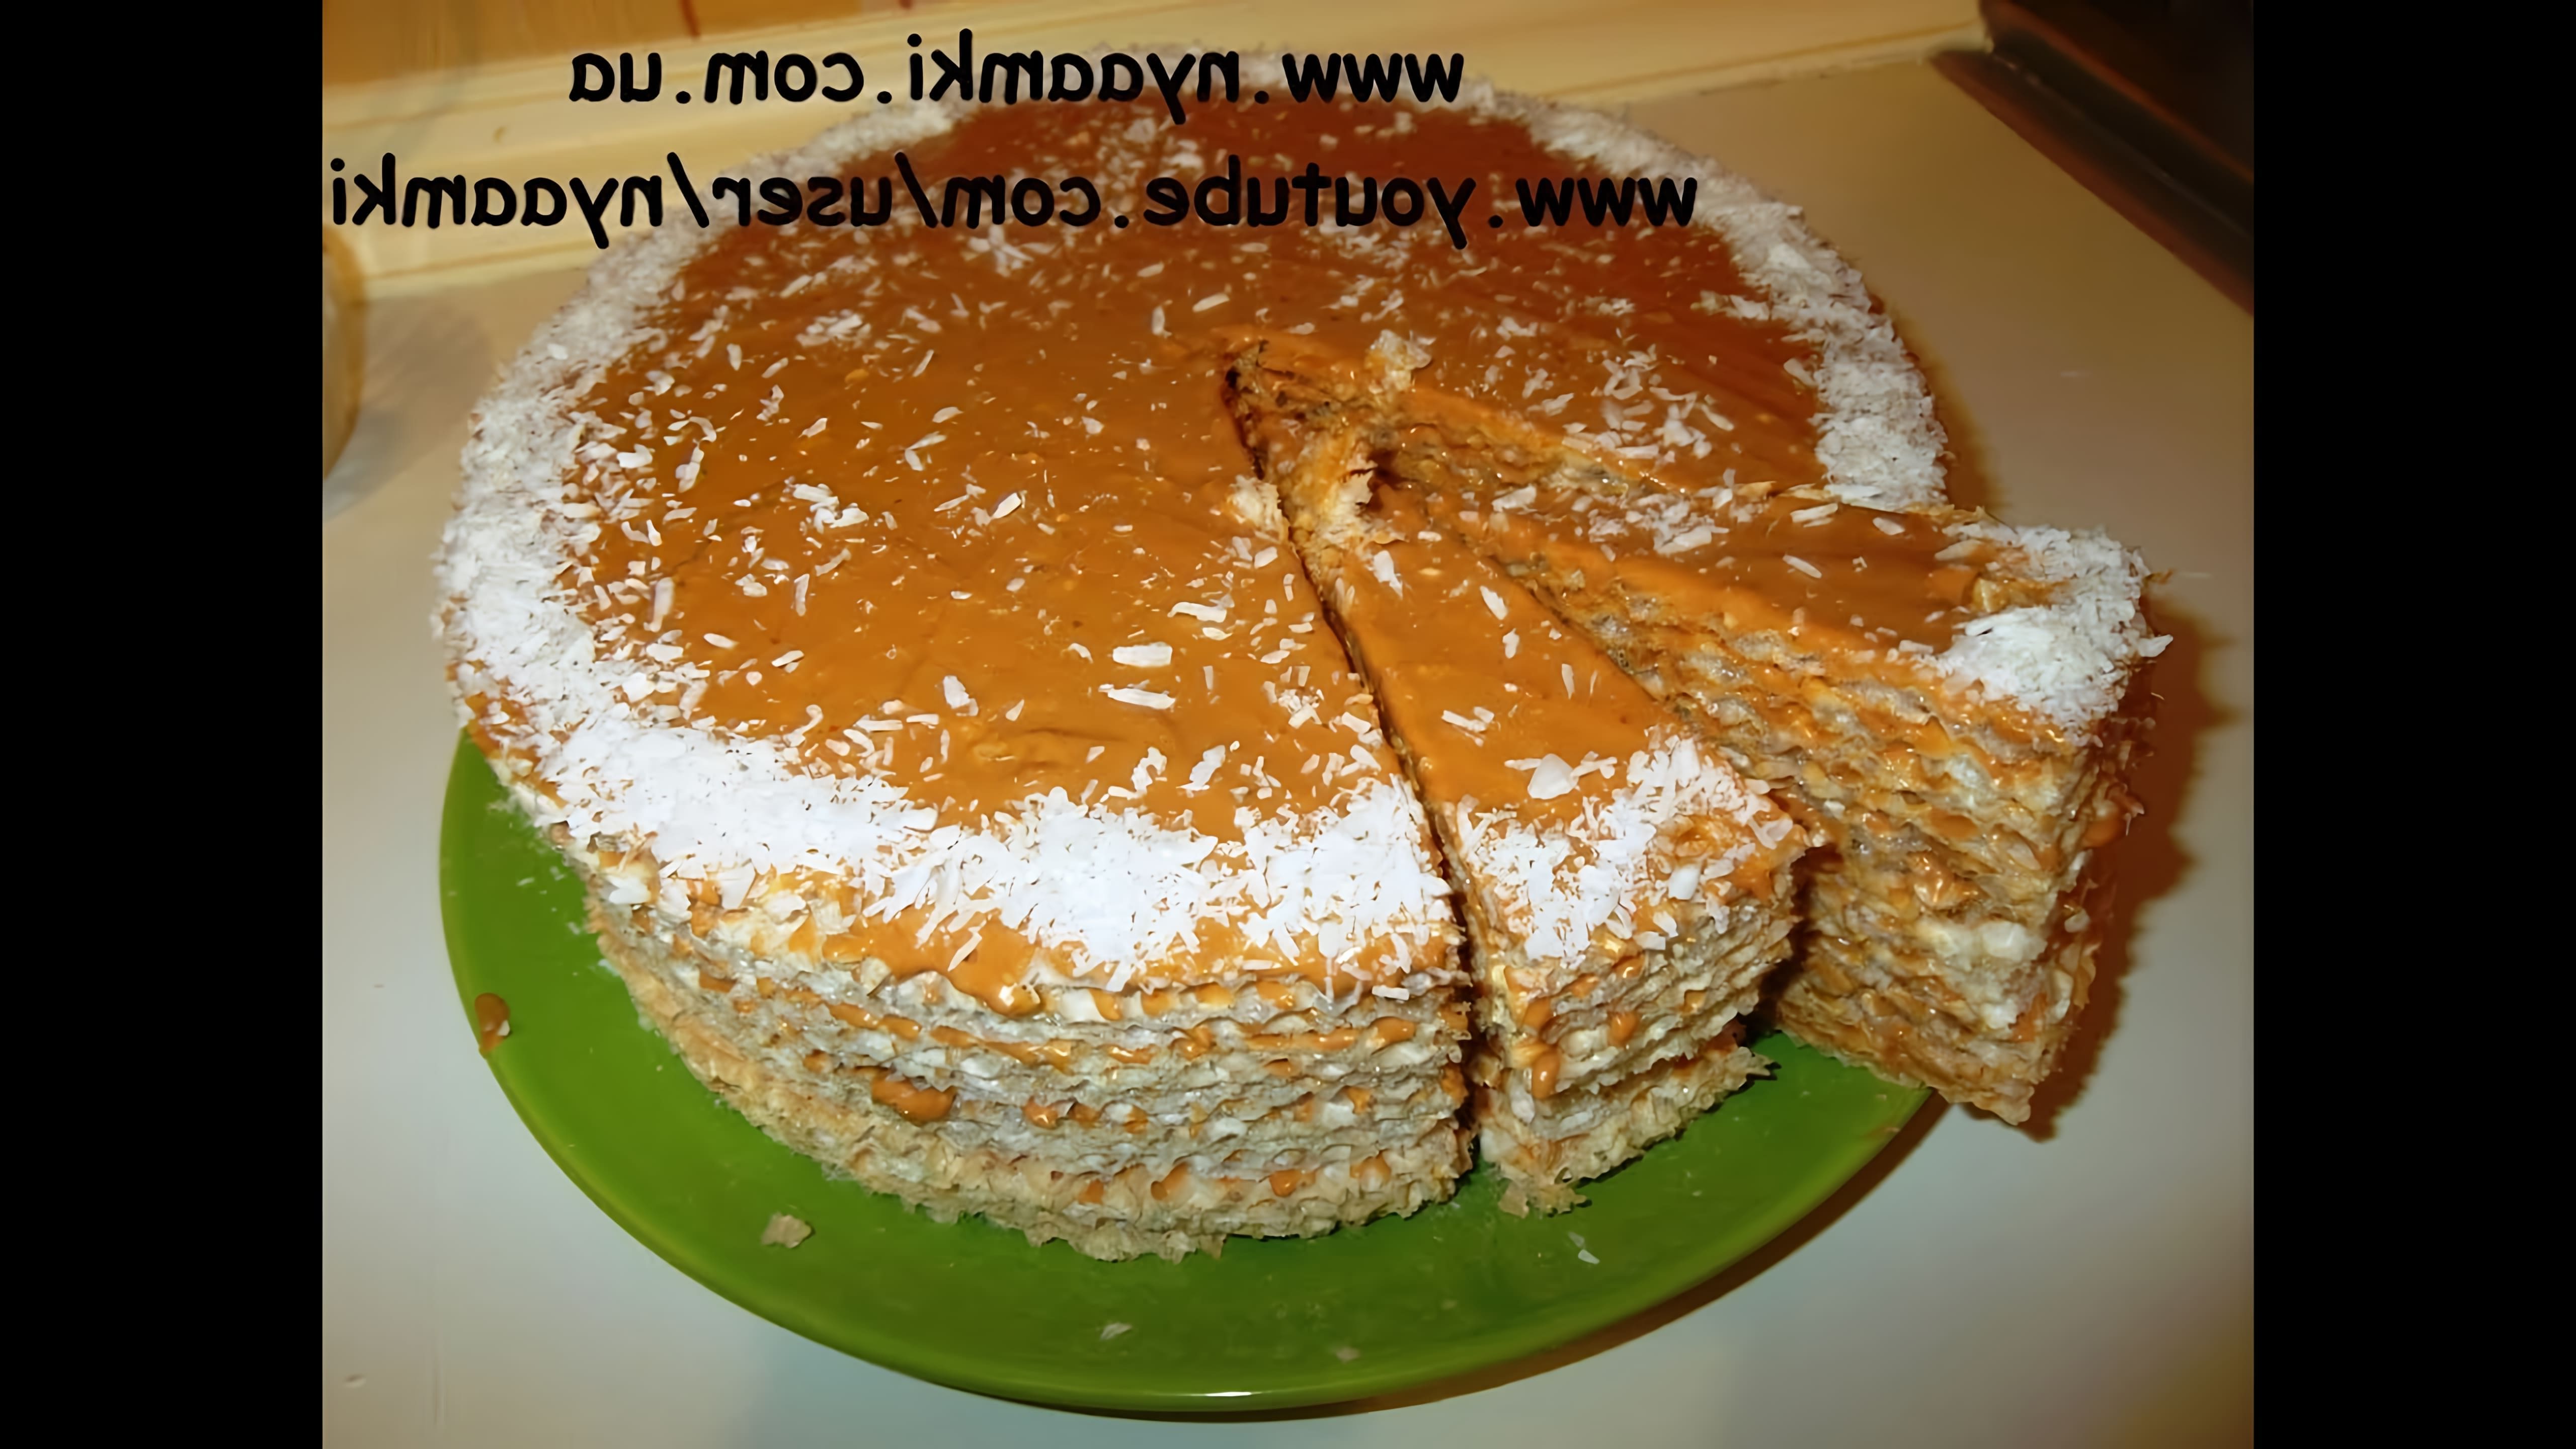 В этом видео демонстрируется рецепт приготовления вафельного торта со сгущенкой